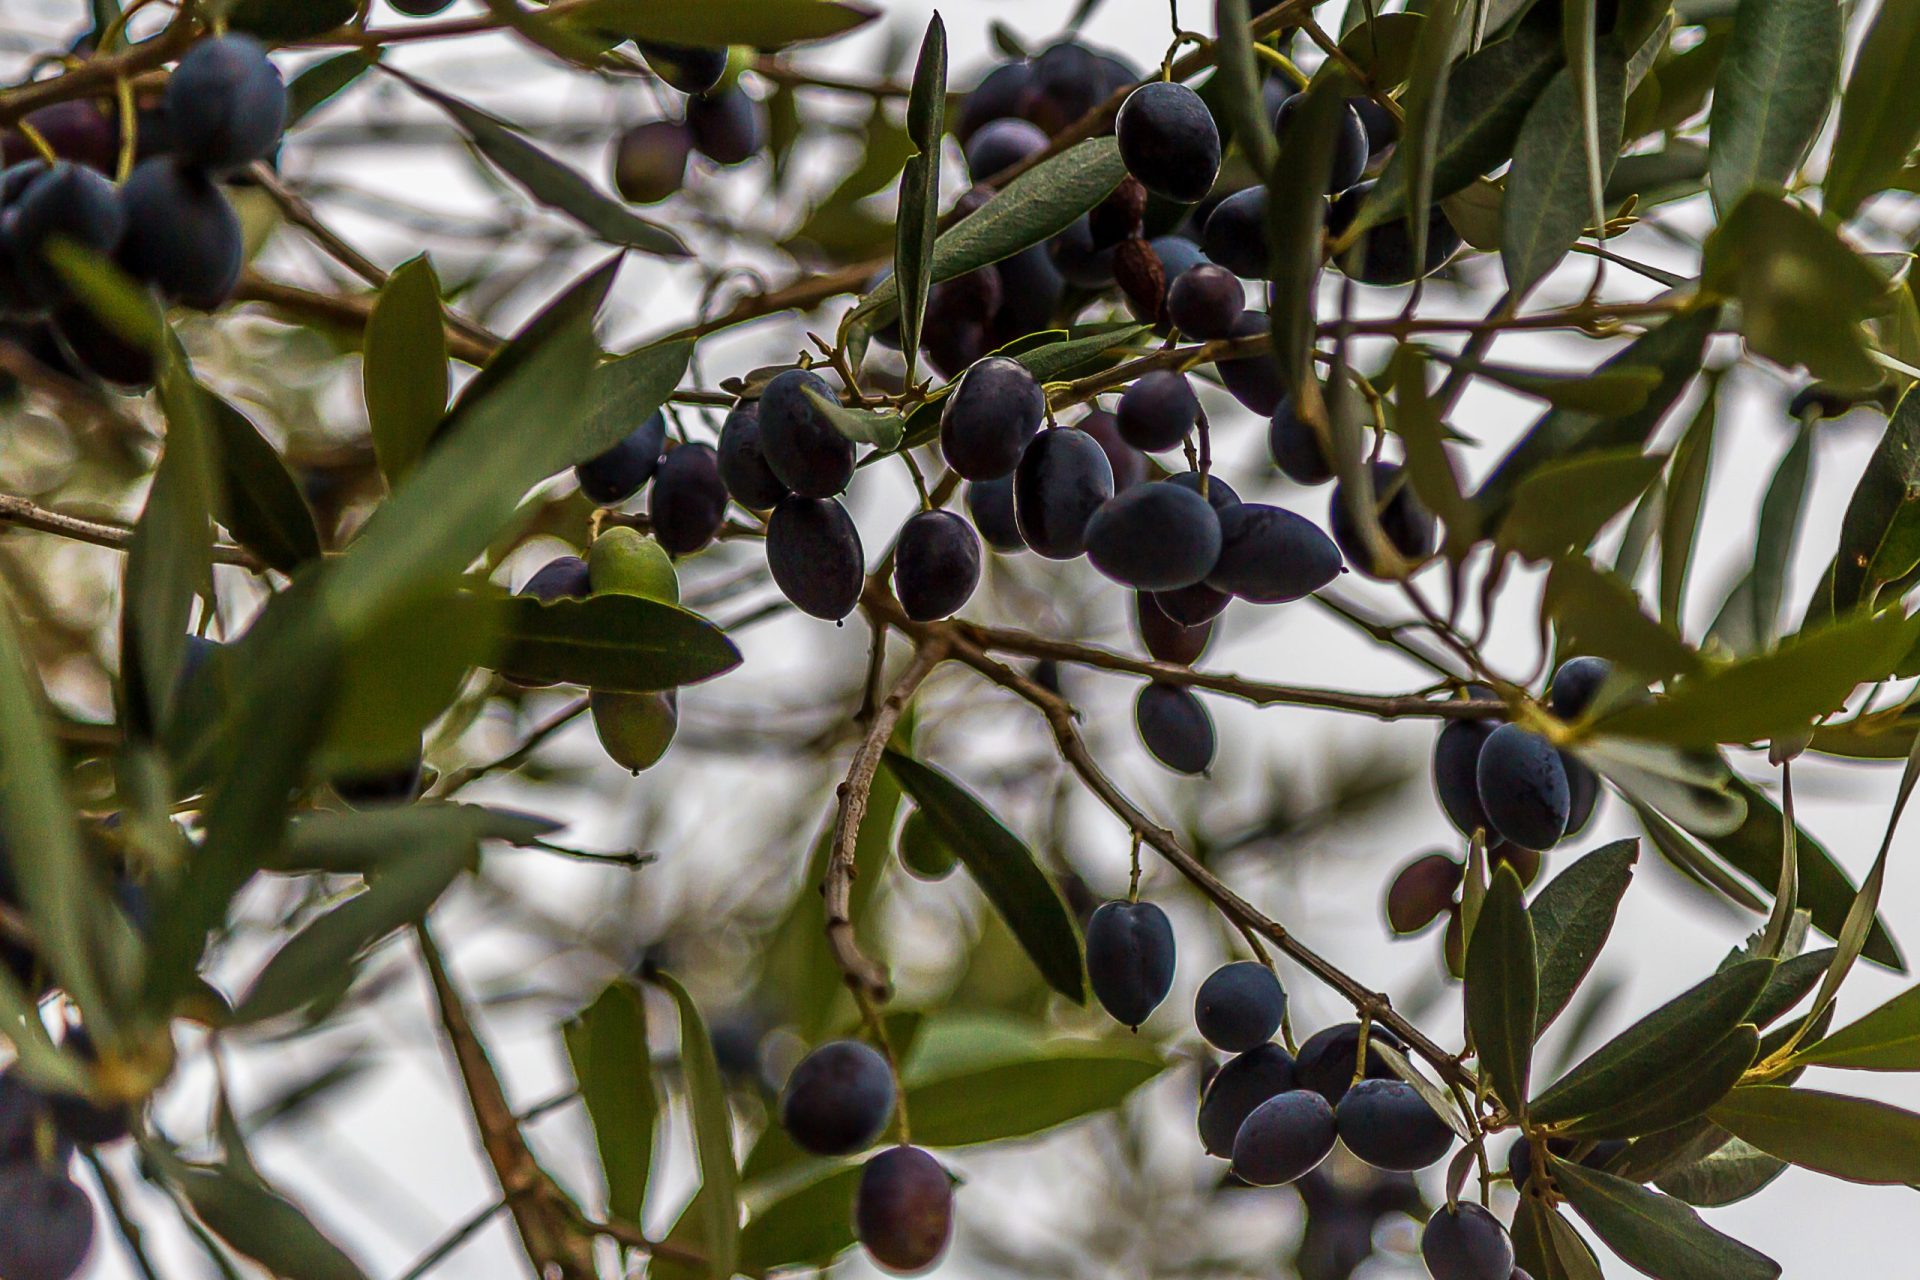 Quercus exige suspensão da apanha noturna da azeitona